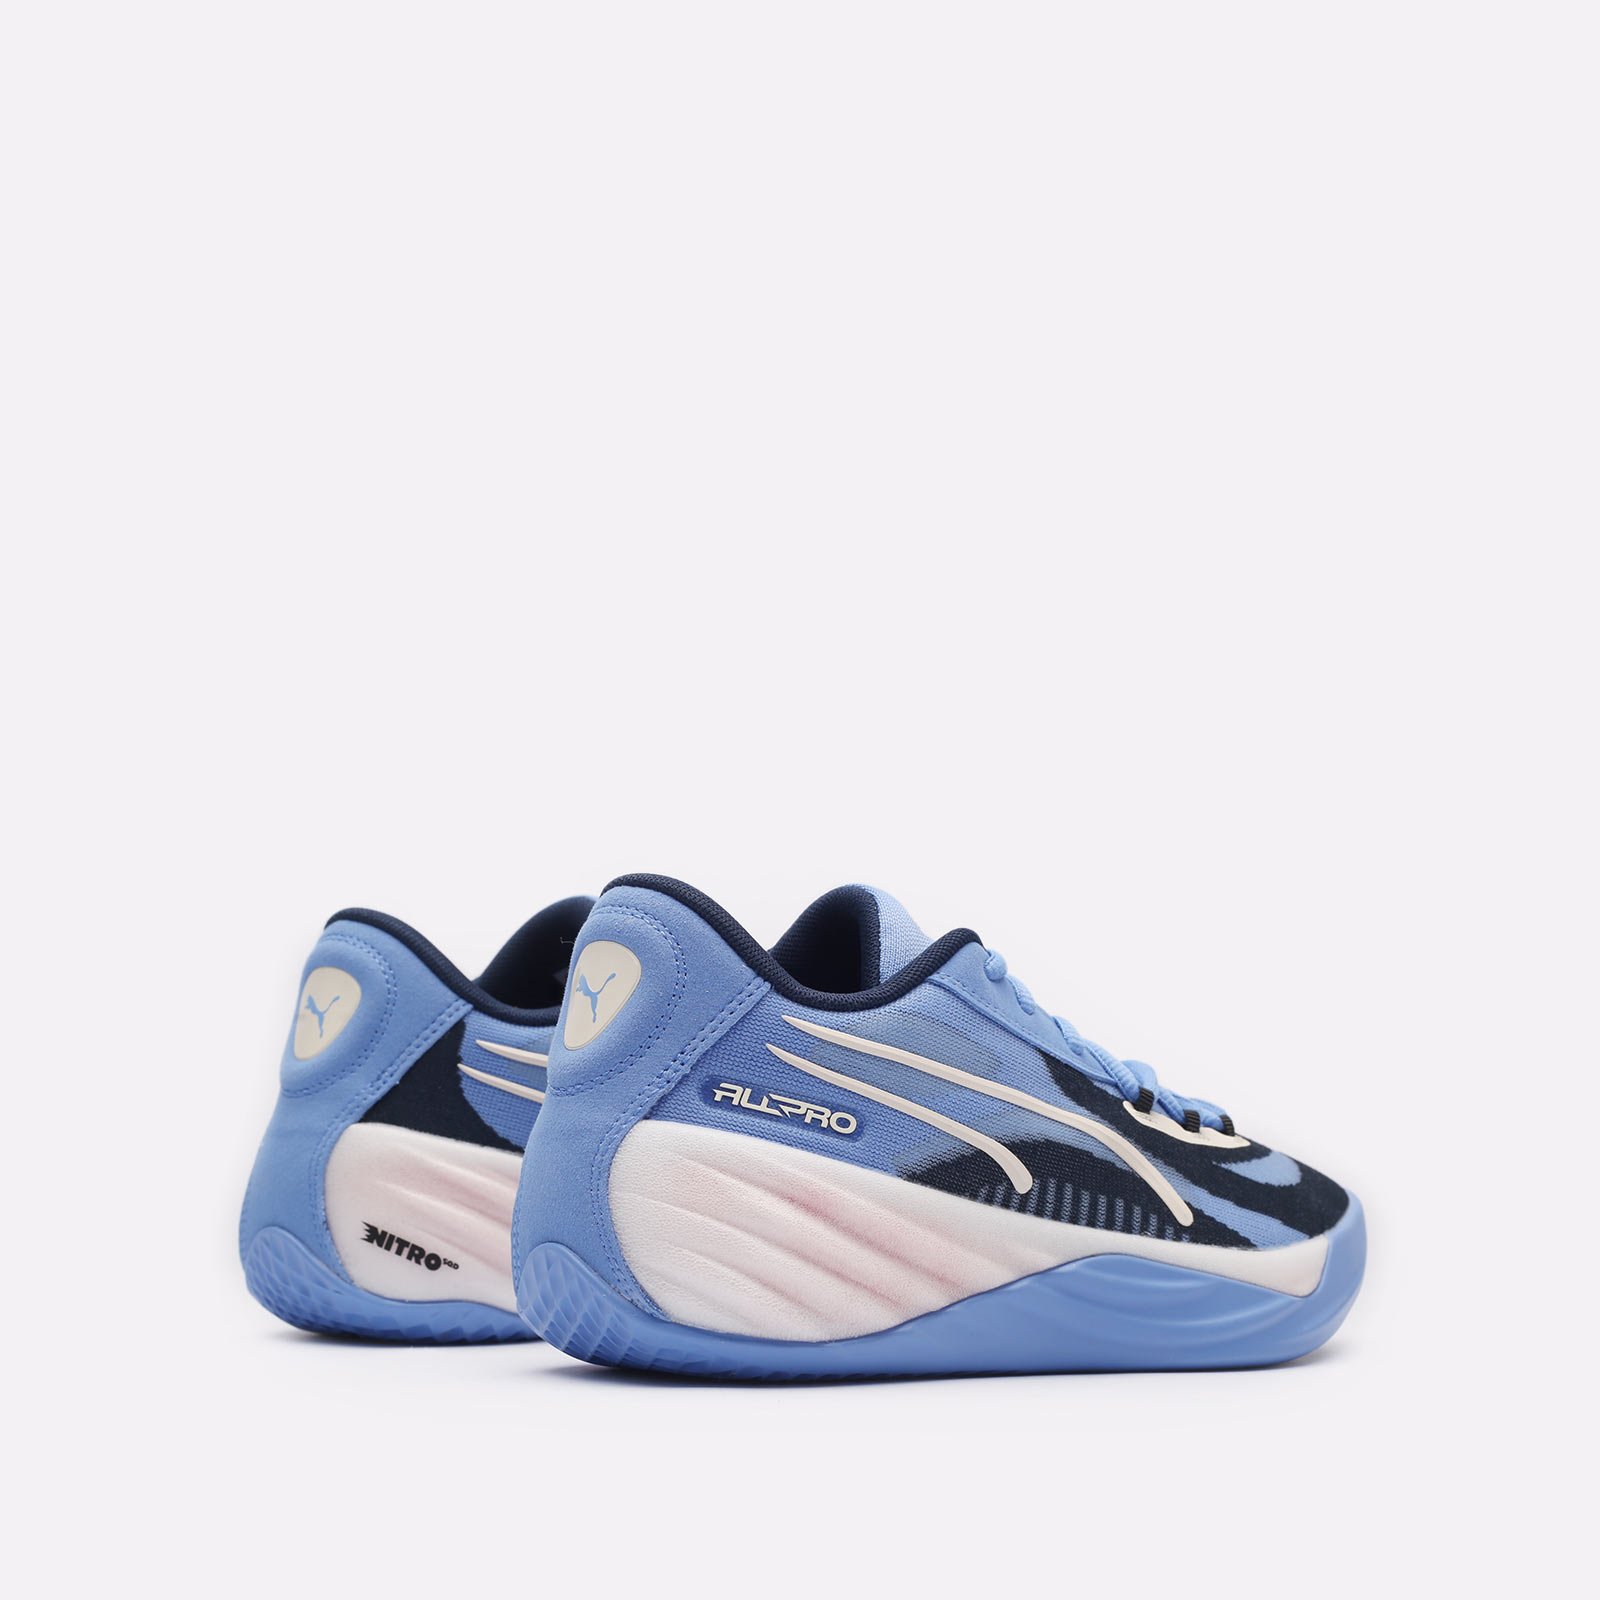 мужские синие баскетбольные кроссовки PUMA All-Pro NITRO 30968801 - цена, описание, фото 3